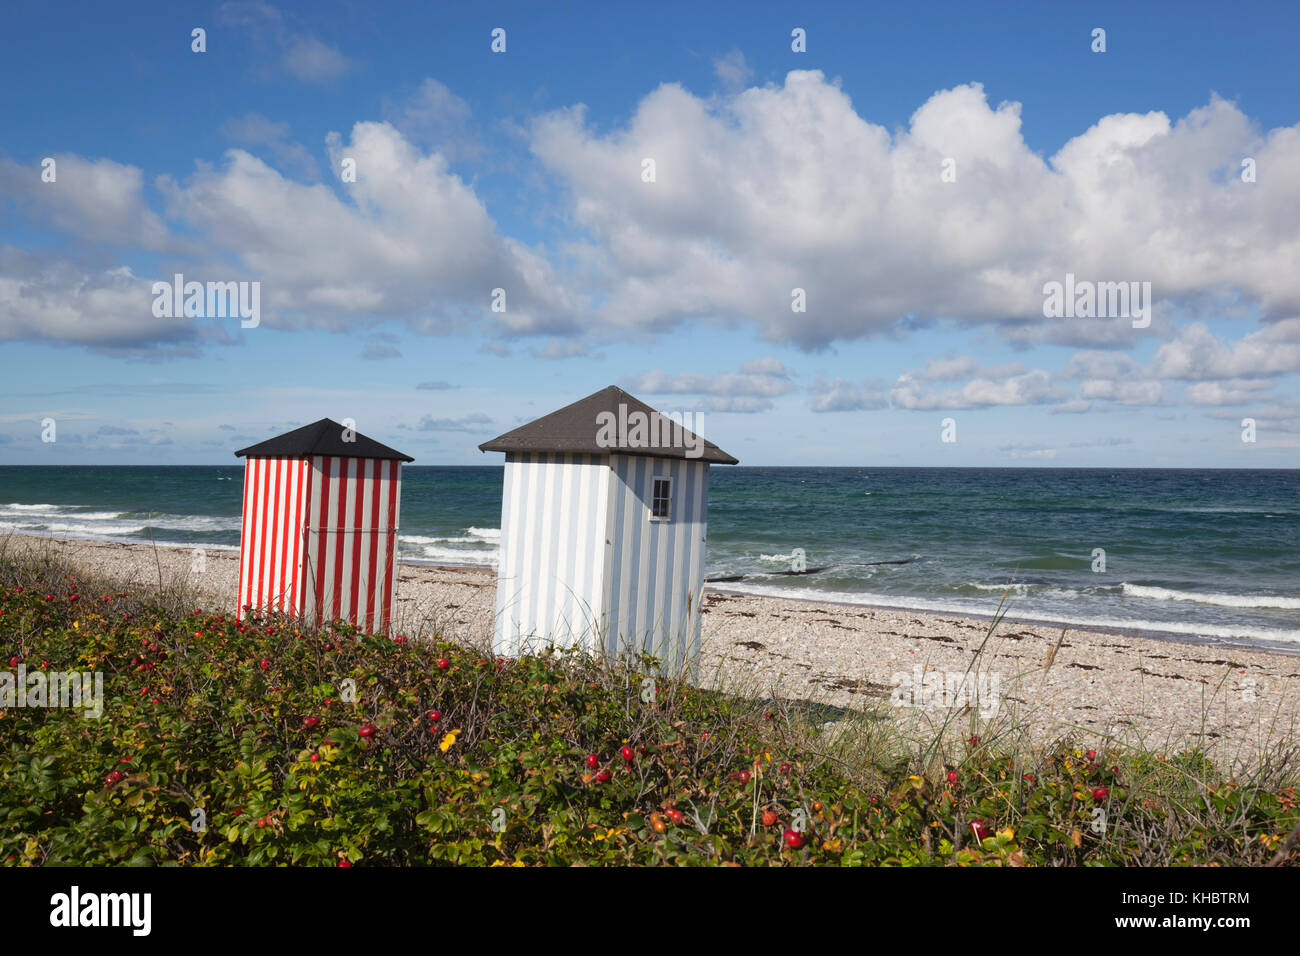 Bunten Badekabinen am Kieselstrand mit blauem Meer und Himmel mit Wolken, Rageleje, Kattegat Coast, Neuseeland, Dänemark, Europa Stockfoto